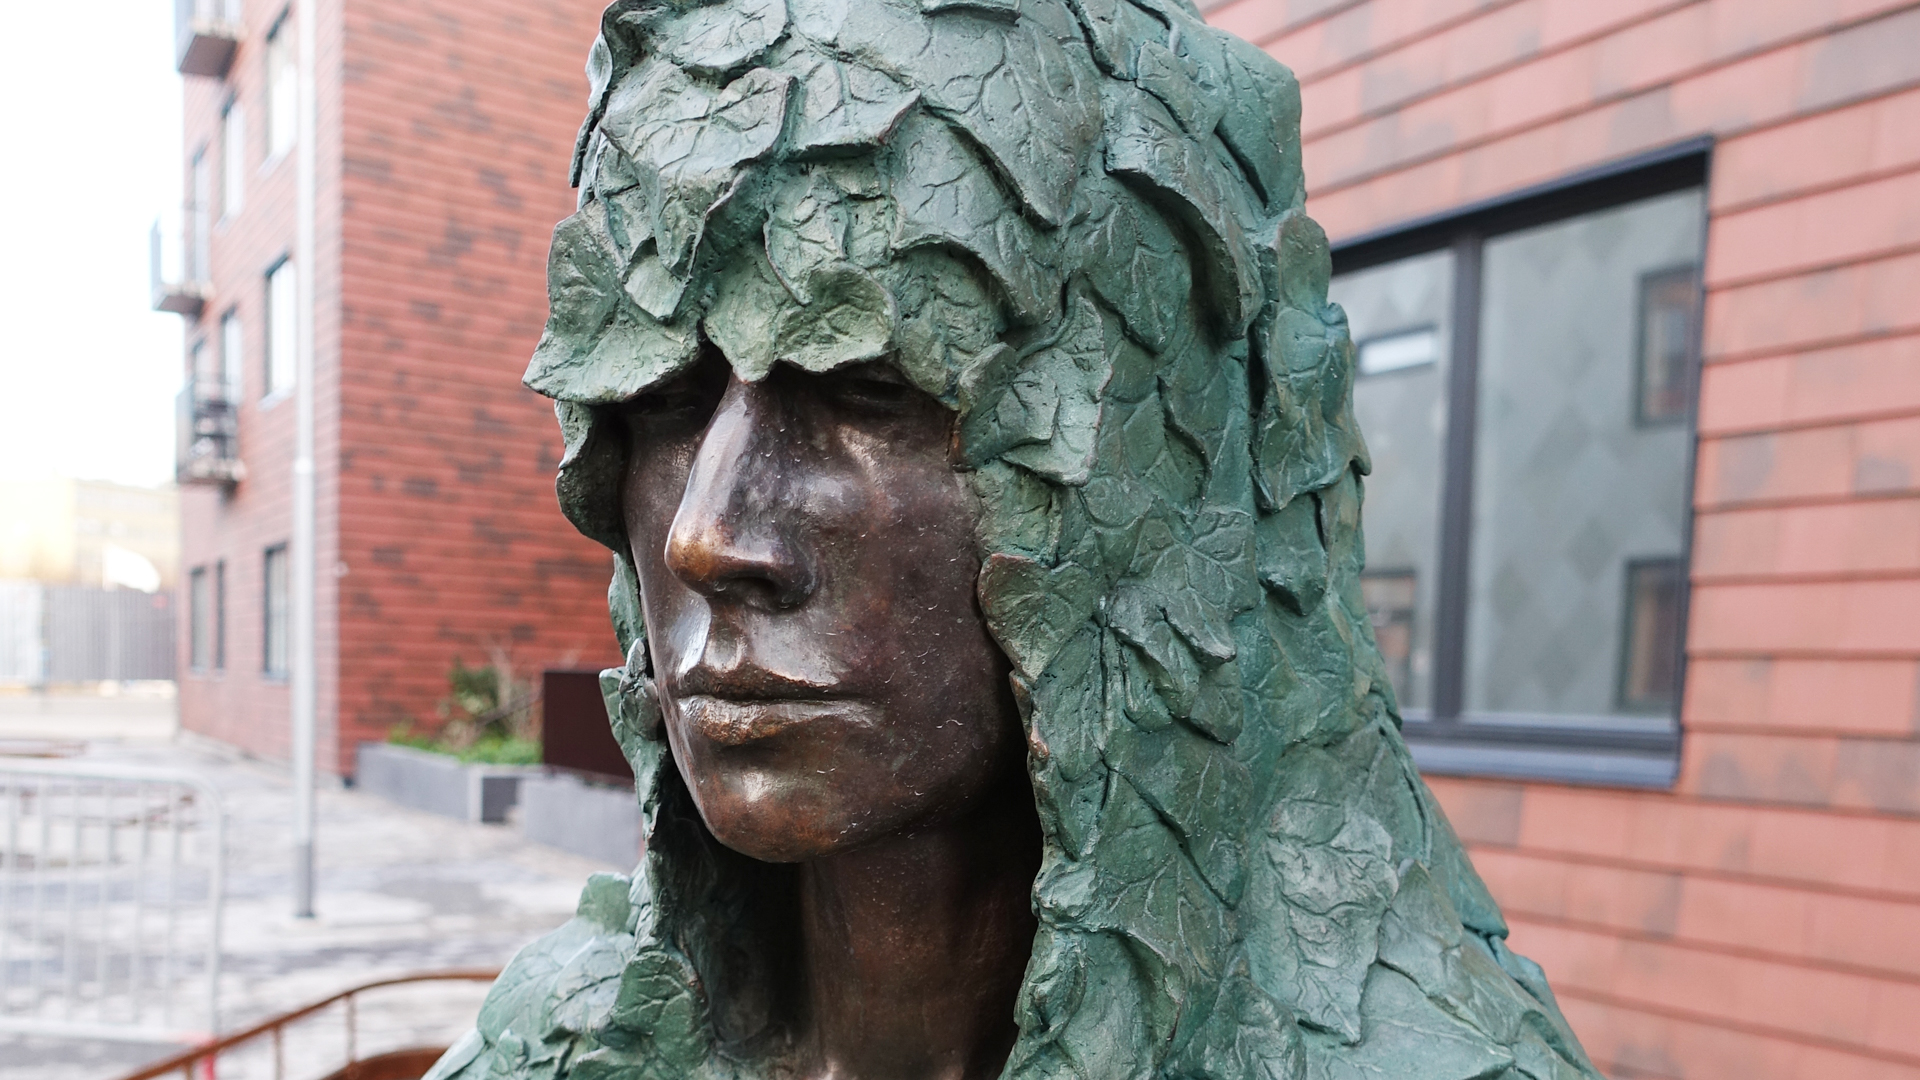 Huvudet av en bronsskulptur. Skulpturen har en huva av murgröna över huvudet.